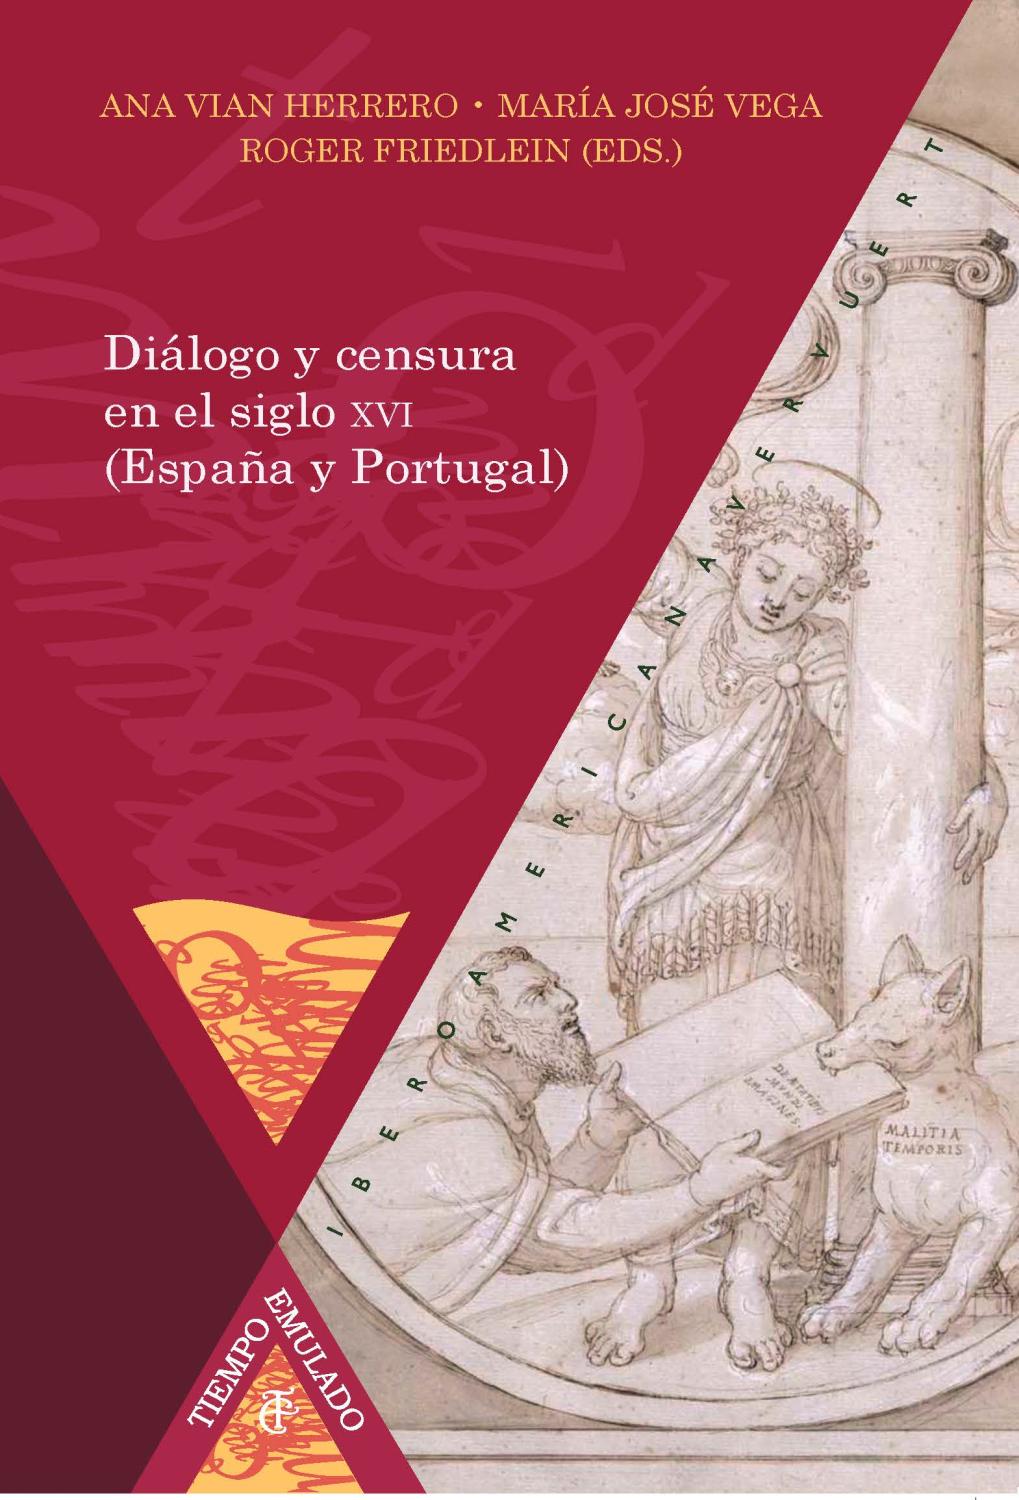 Diálogo y censura en el siglo XVI (España y Portugal) / al cuidado de Ana Vian Herrero, María José Vega, Roger Friedlein.